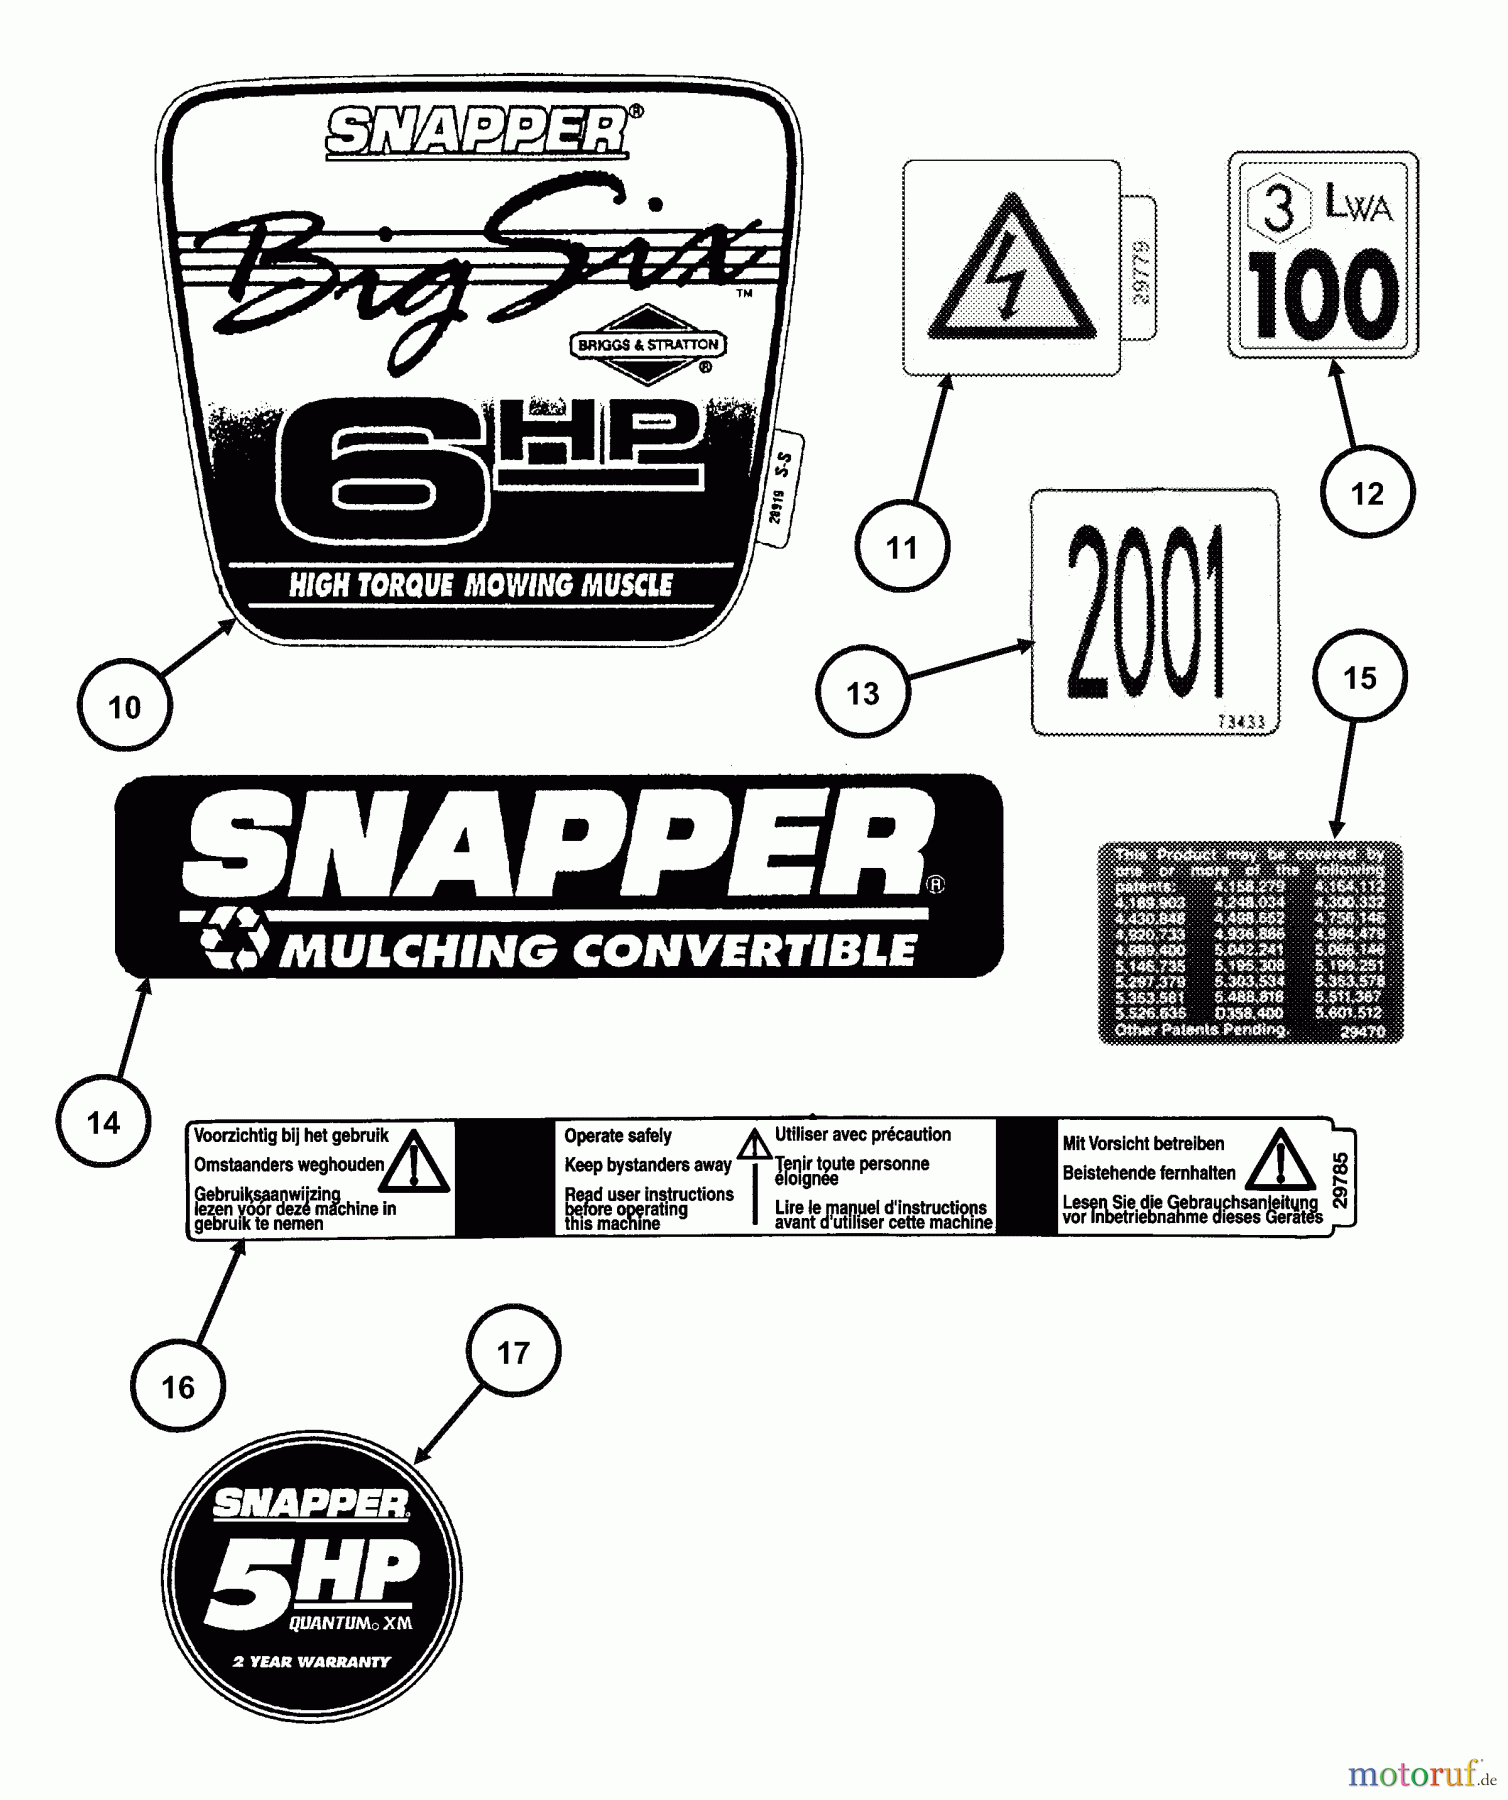  Snapper Rasenmäher RP215012T2 - Snapper 21